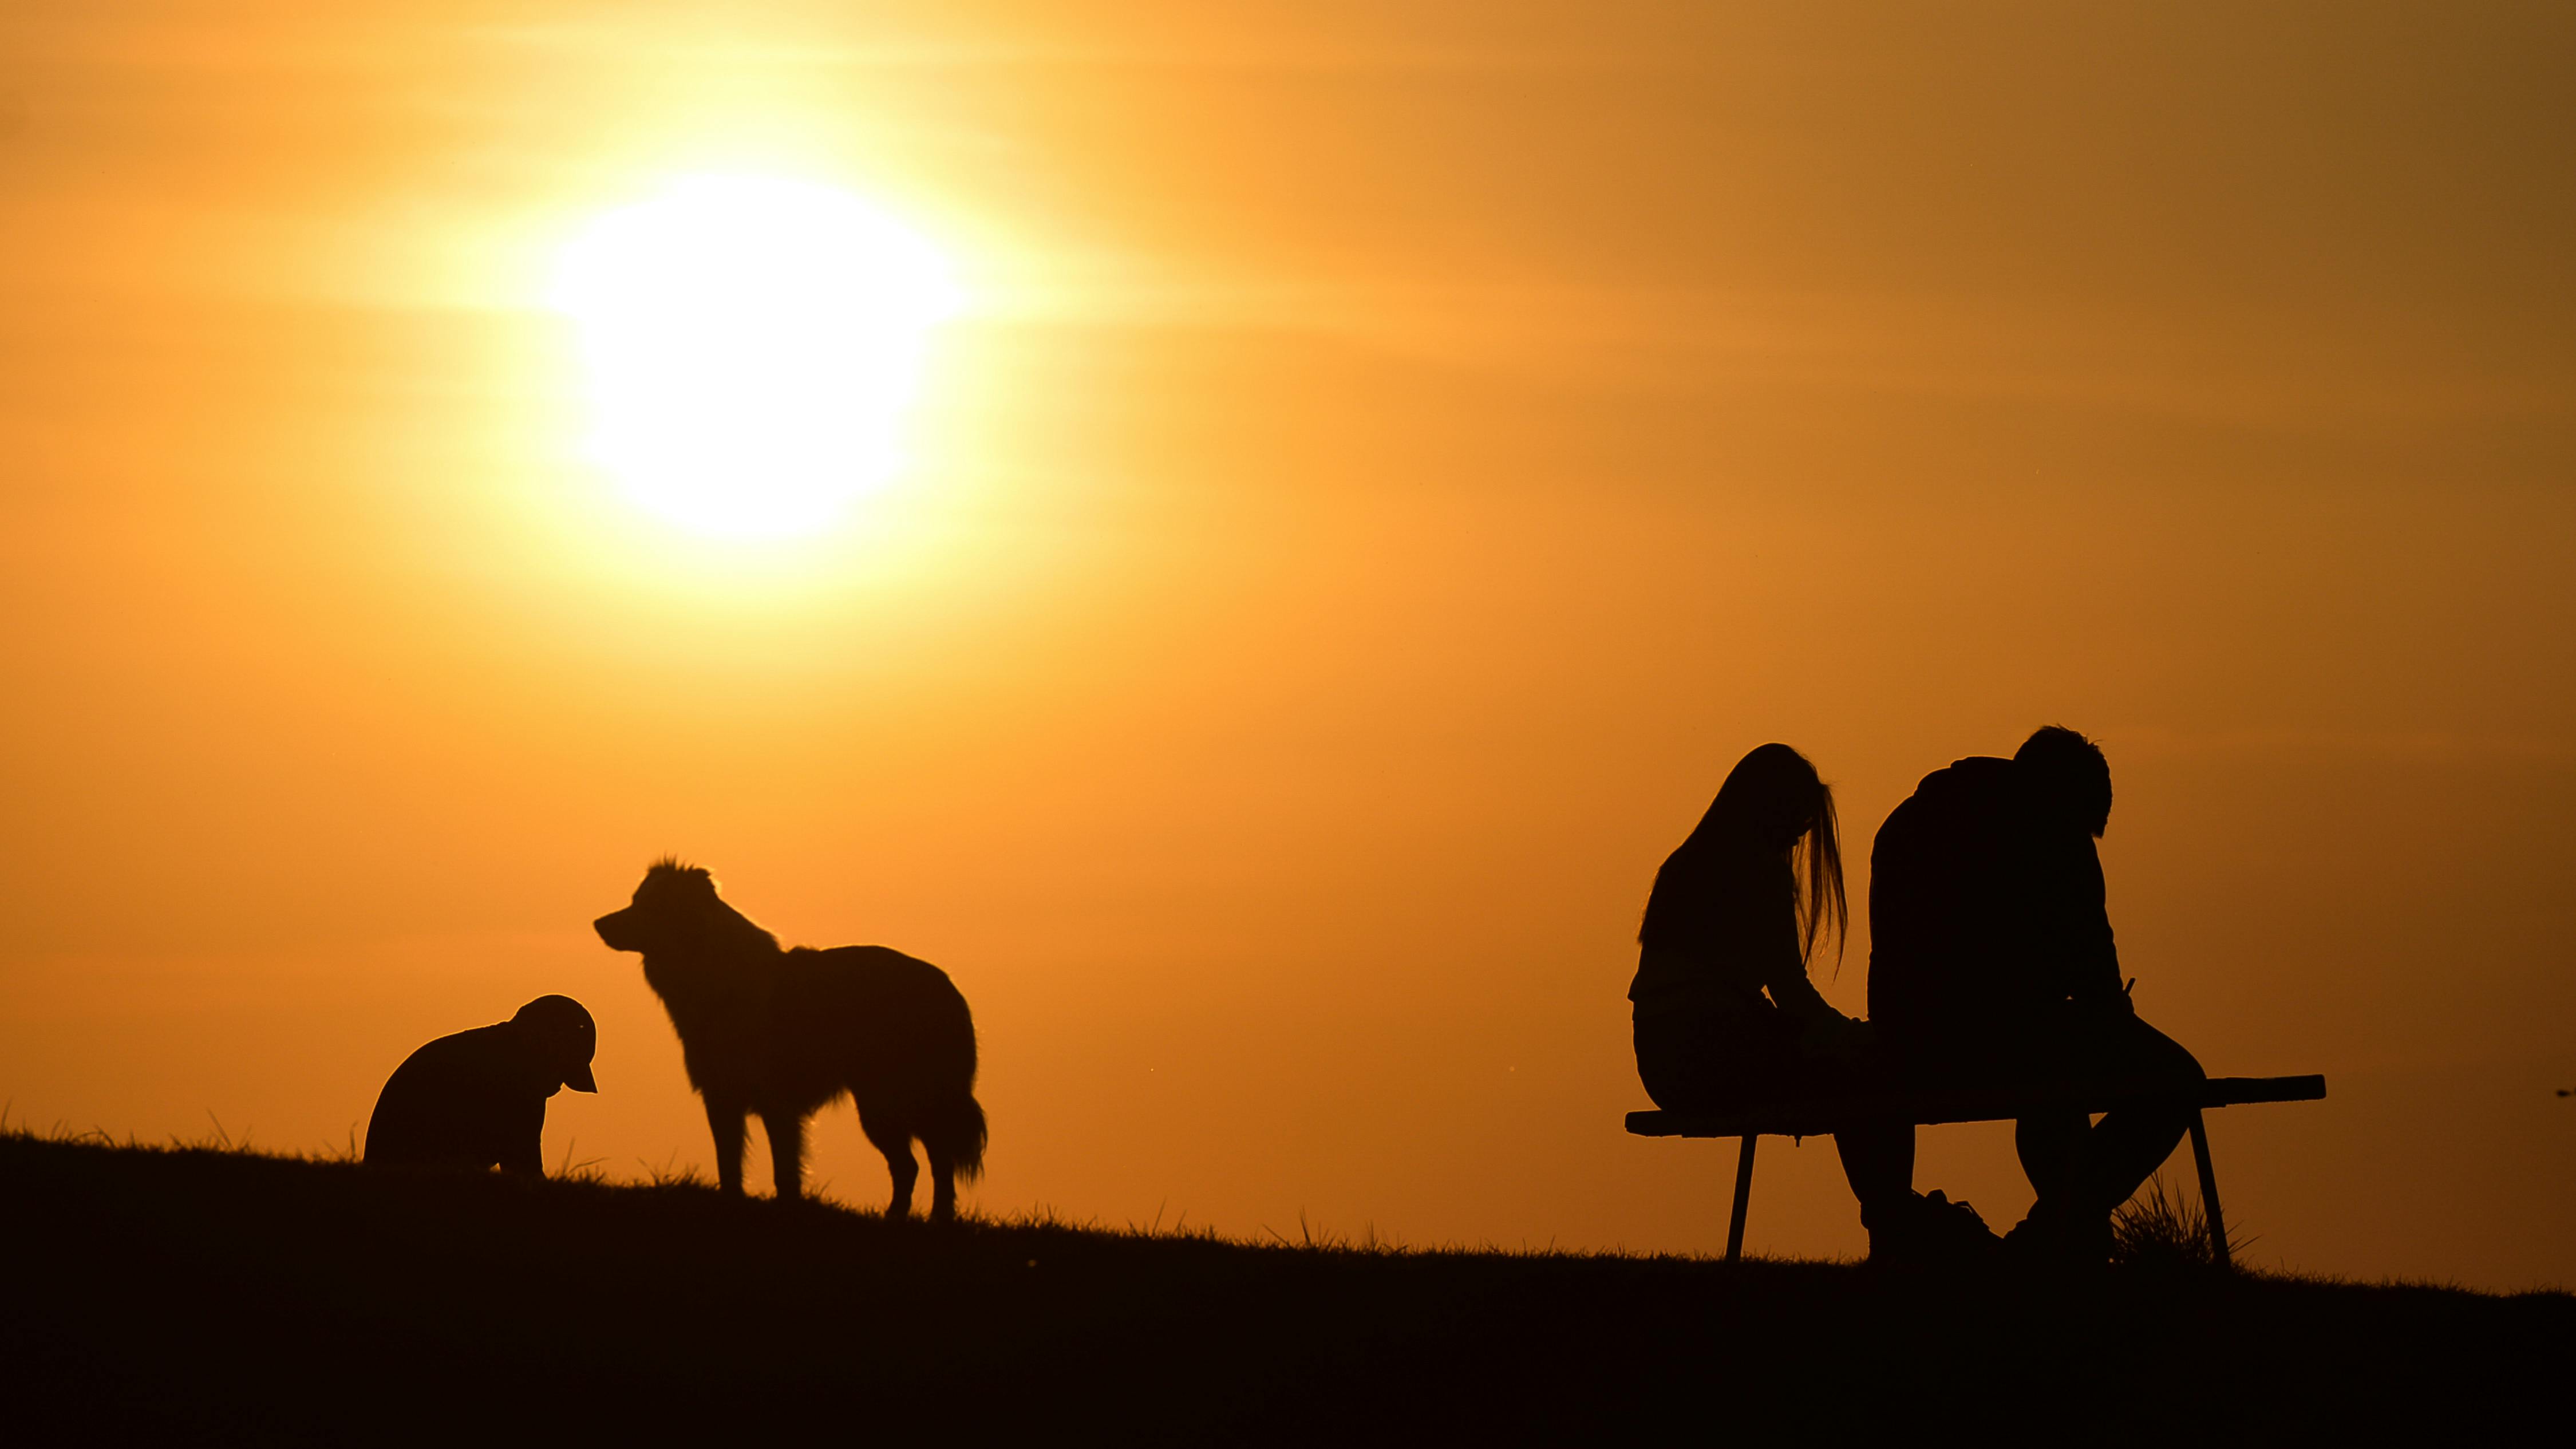 Die Silhouetten von drei Menschen und einem Hund im Gegenlicht der Sonne gesehen.  